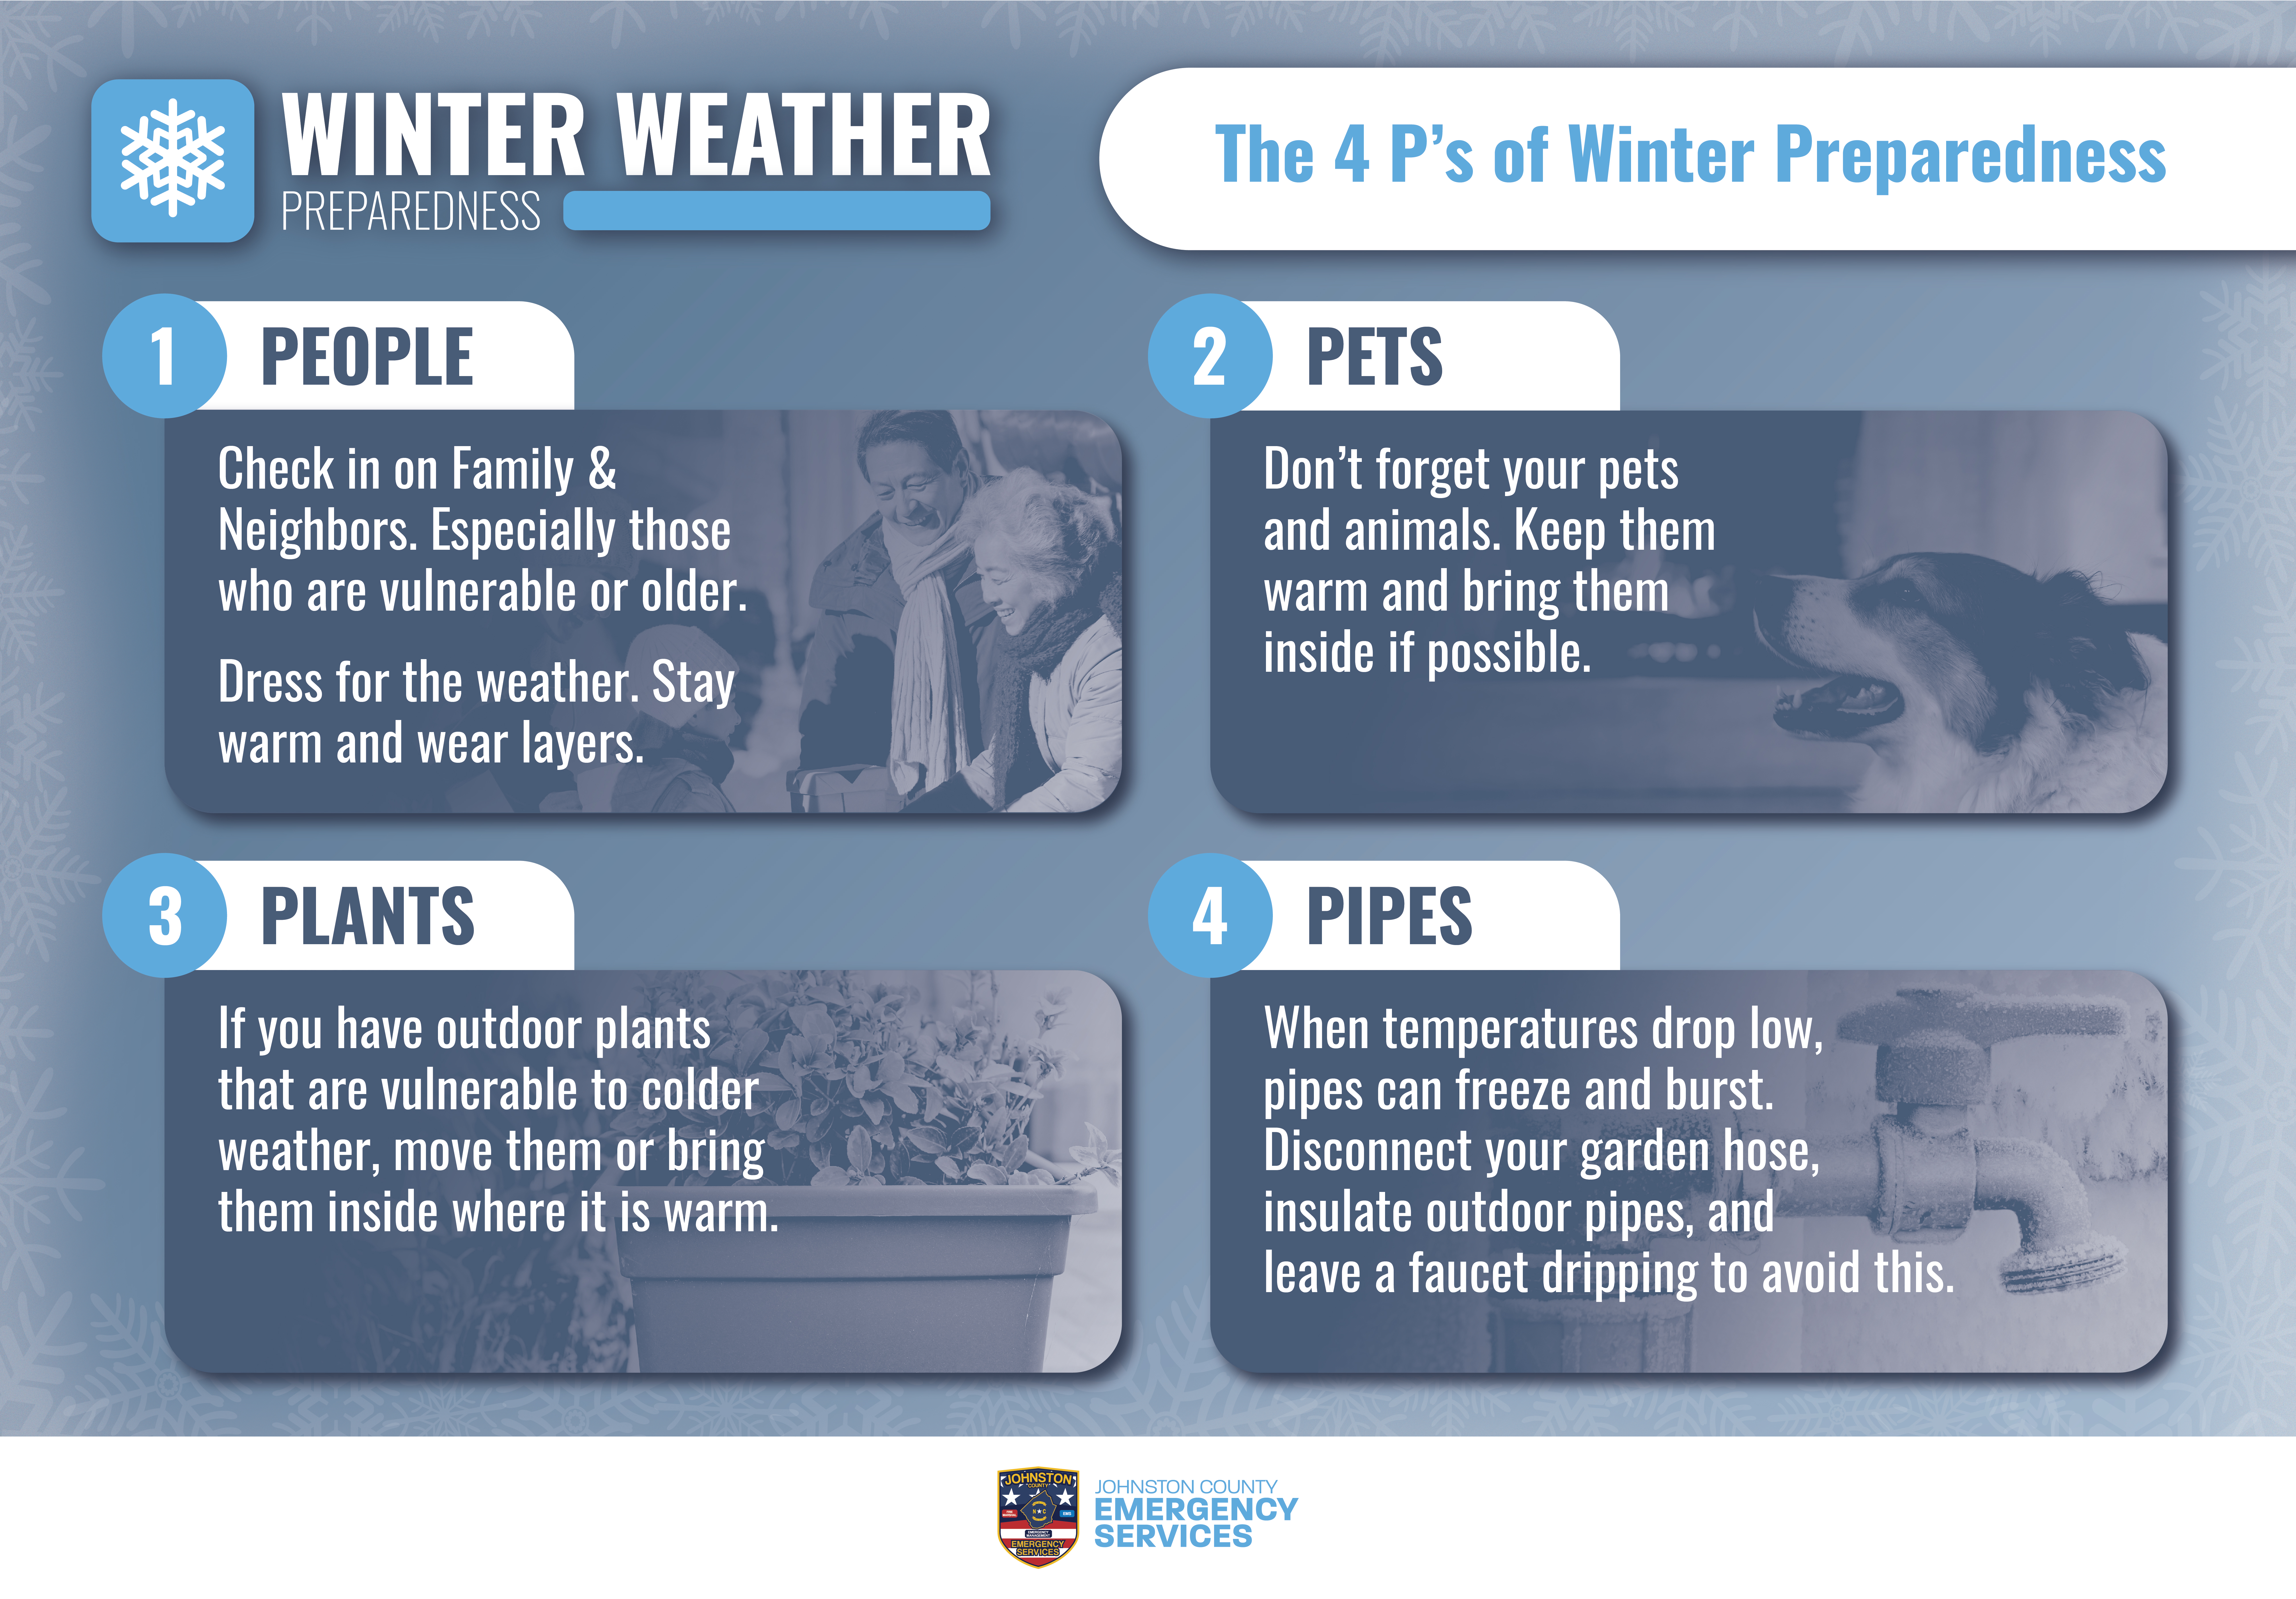 The 4 P's of Winter Preparedness